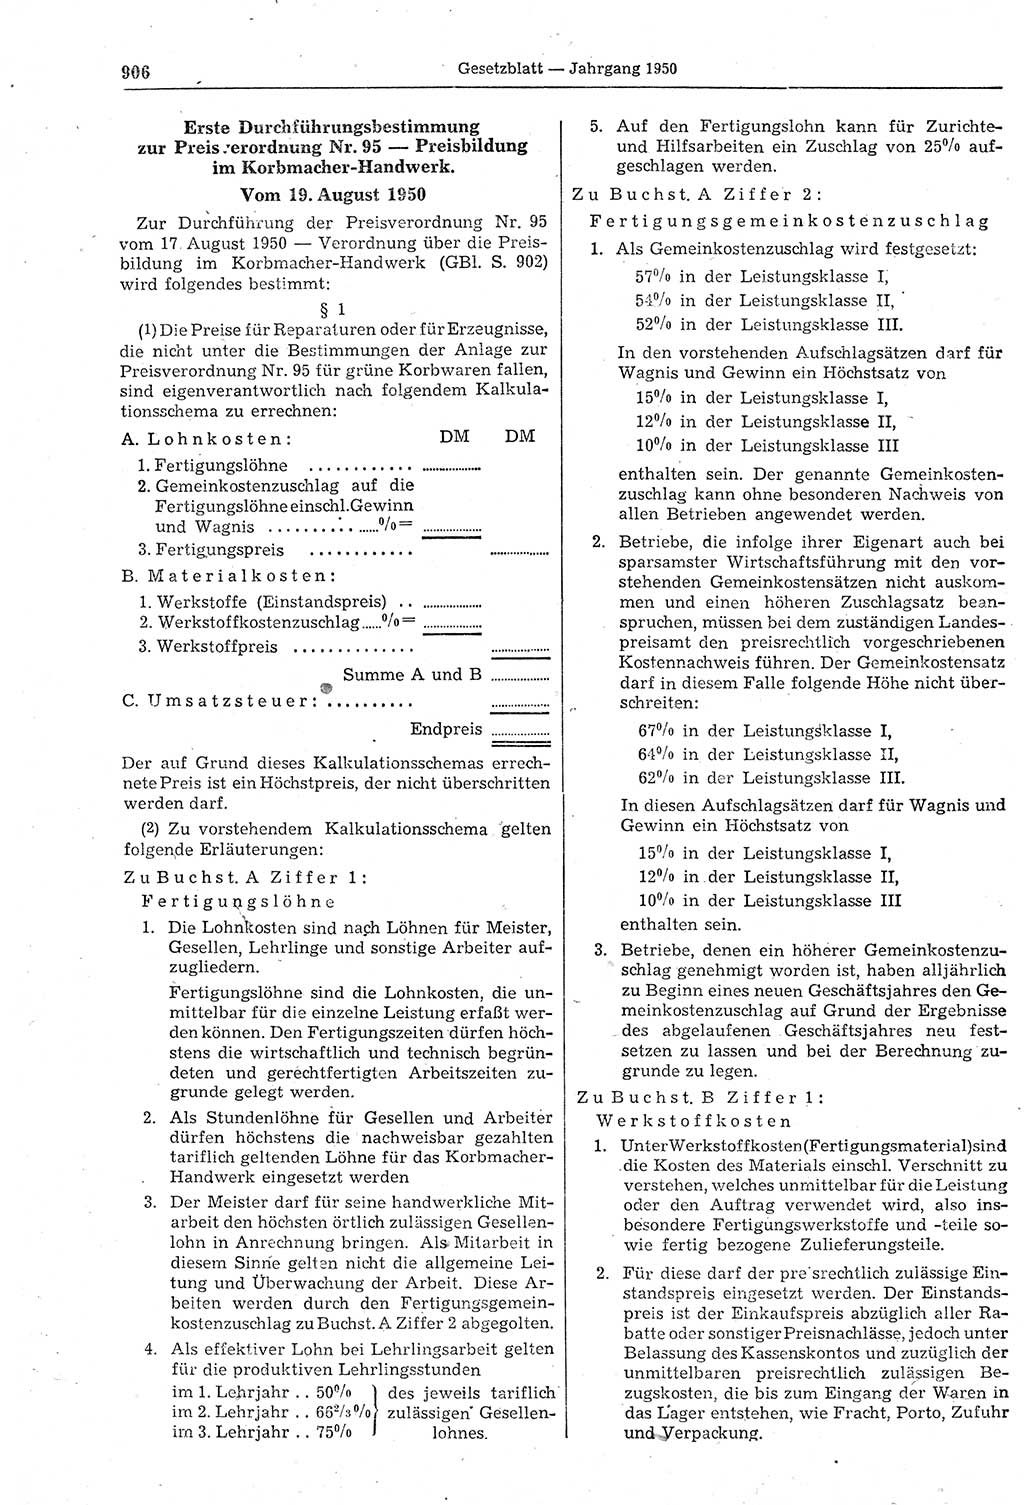 Gesetzblatt (GBl.) der Deutschen Demokratischen Republik (DDR) 1950, Seite 906 (GBl. DDR 1950, S. 906)